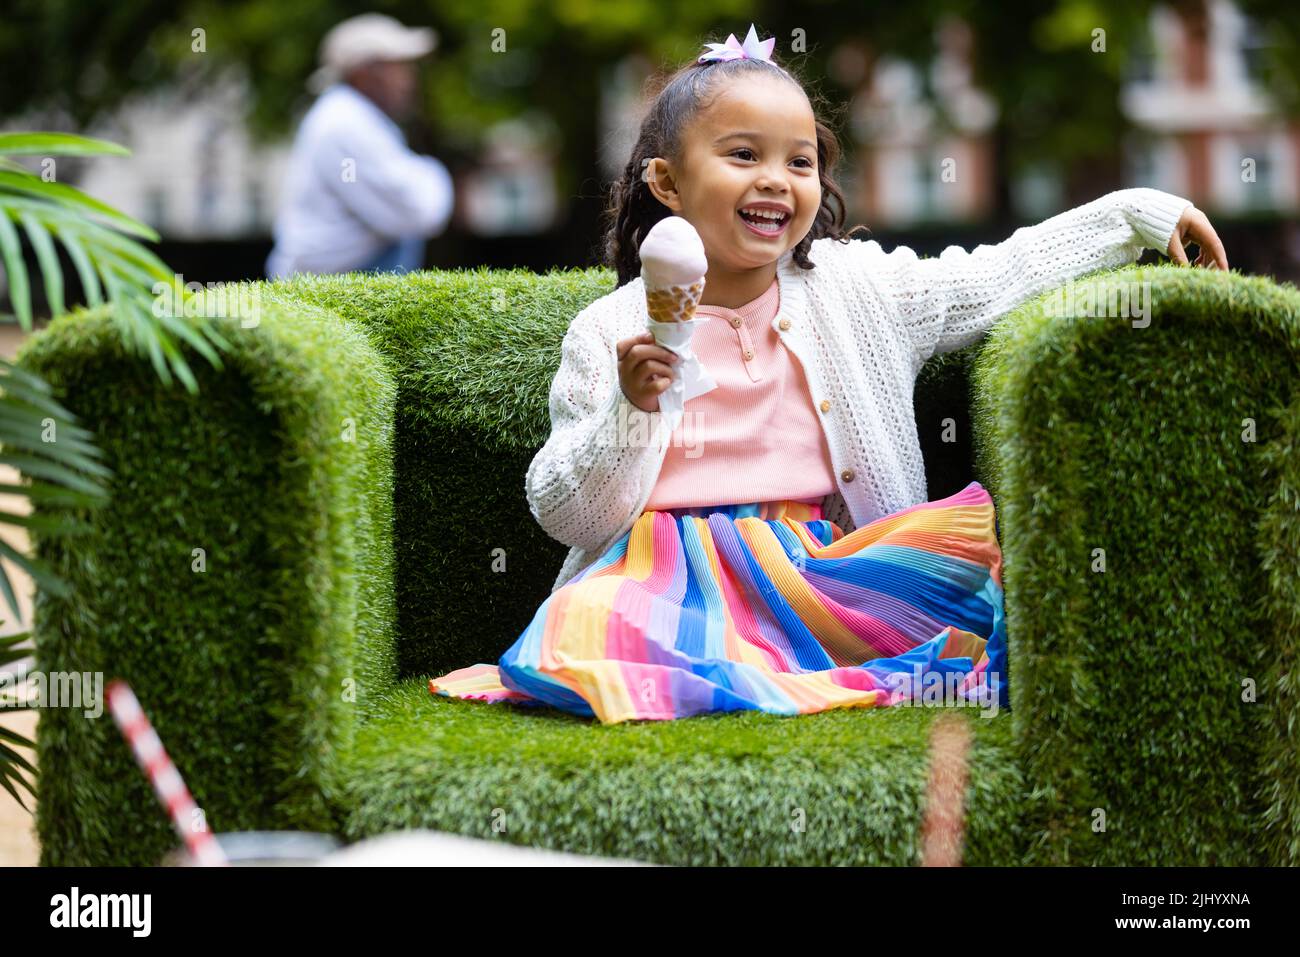 SÓLO PARA USO EDITORIAL Atholea Morman, de 4 años de edad, en la inauguración del verano de este año en The Square en Grosvenor Square en Mayfair, Londres. Fecha de la foto: Jueves 21 de julio de 2022. Foto de stock